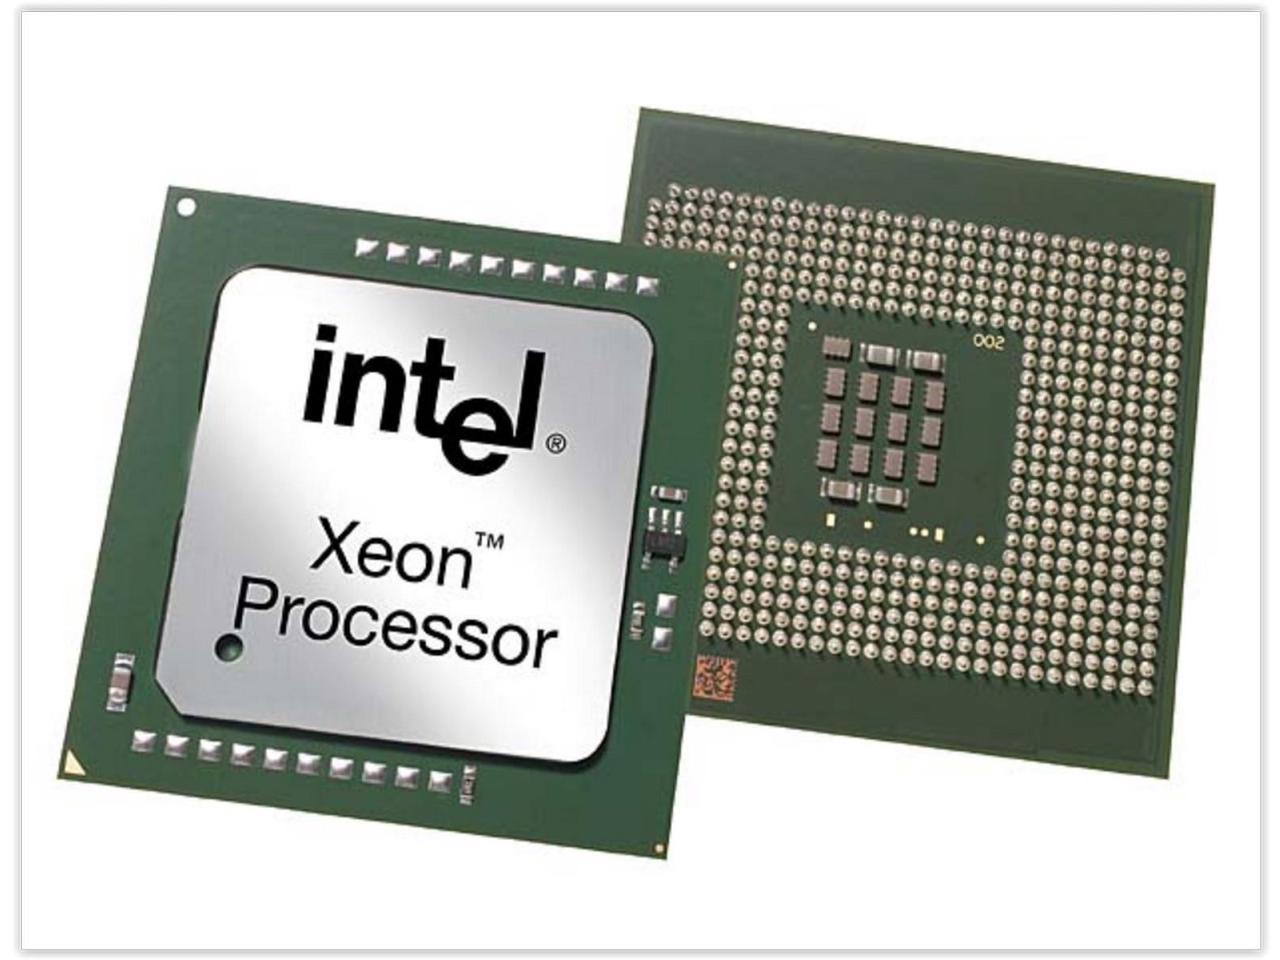 Dell Xeon E5-2600 v3 2.4 GHz LGA 2011-3 462-9901 Processor